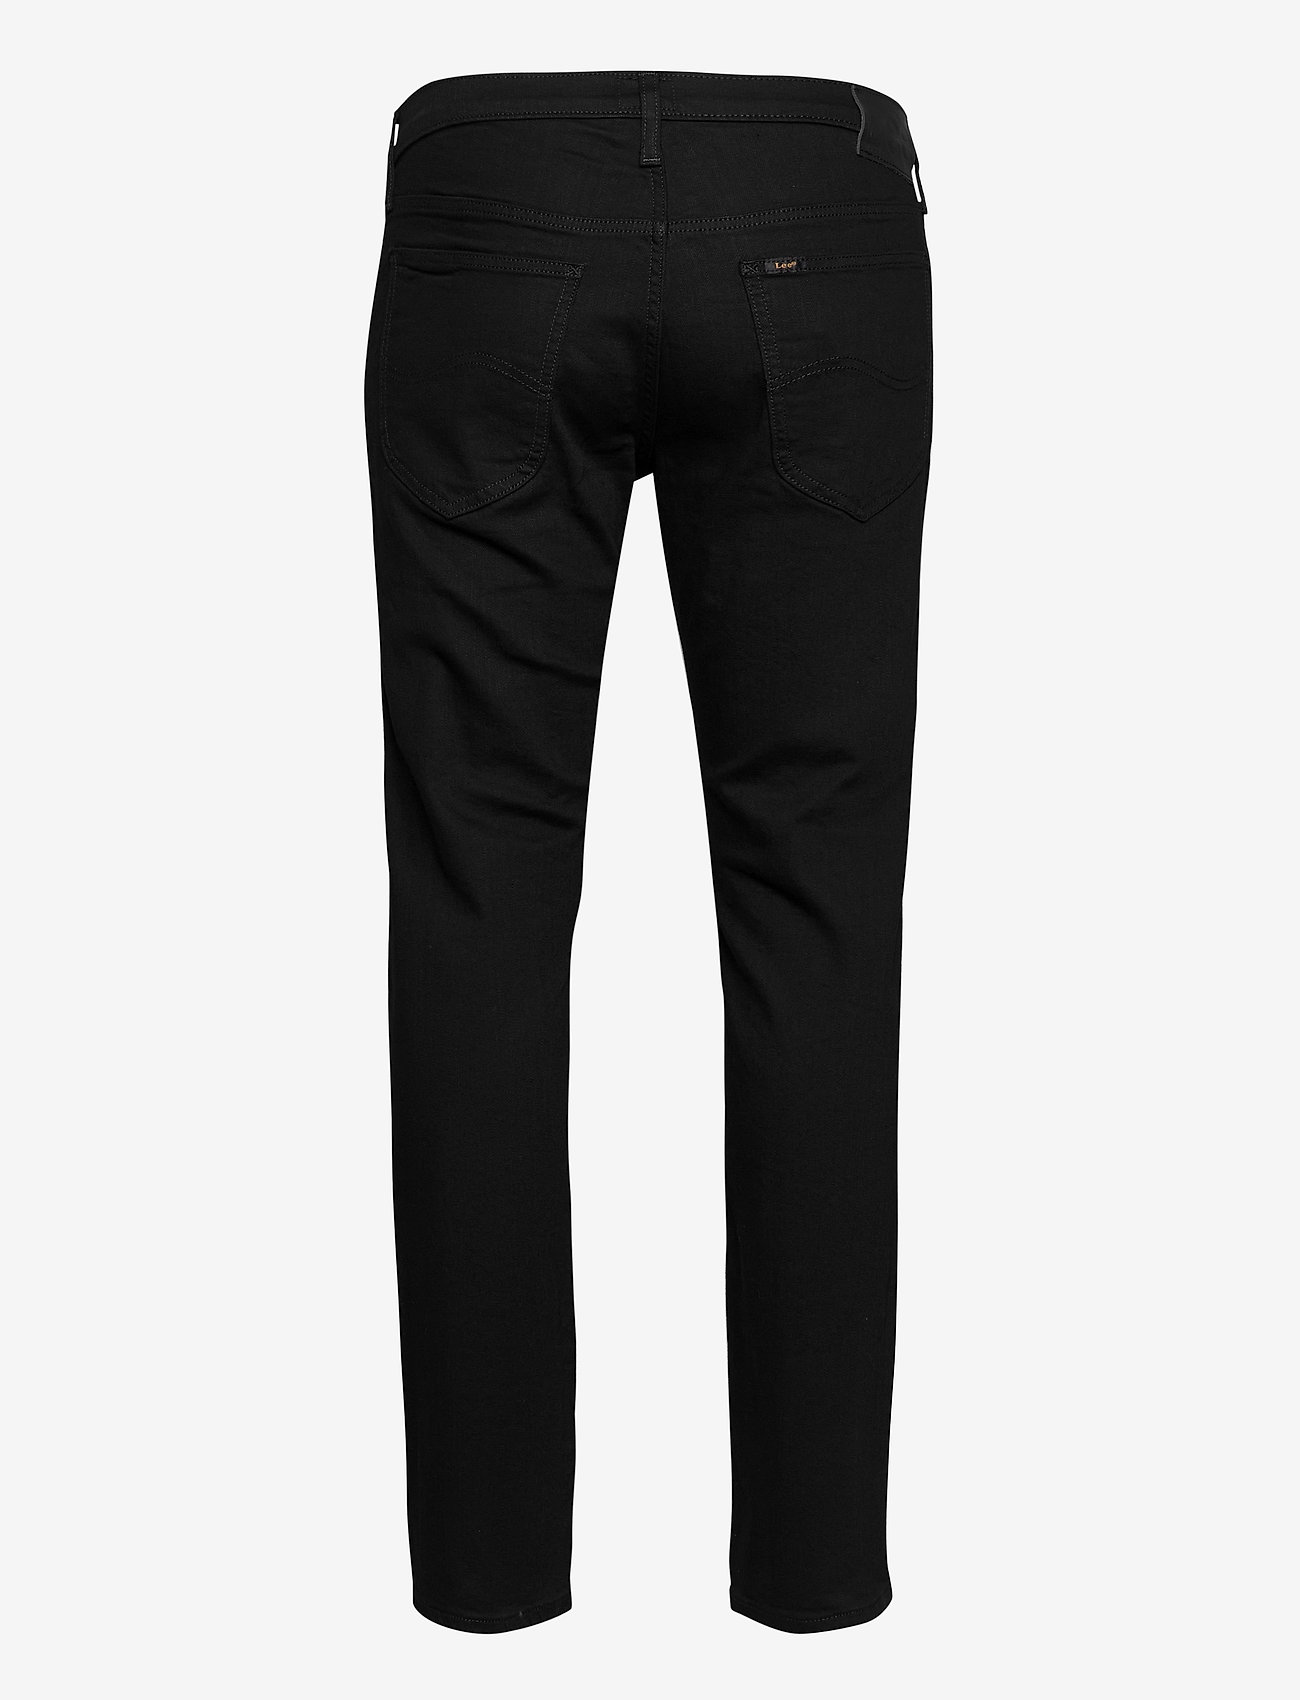 Lee Jeans - DAREN ZIP FLY - regular jeans - clean black - 1